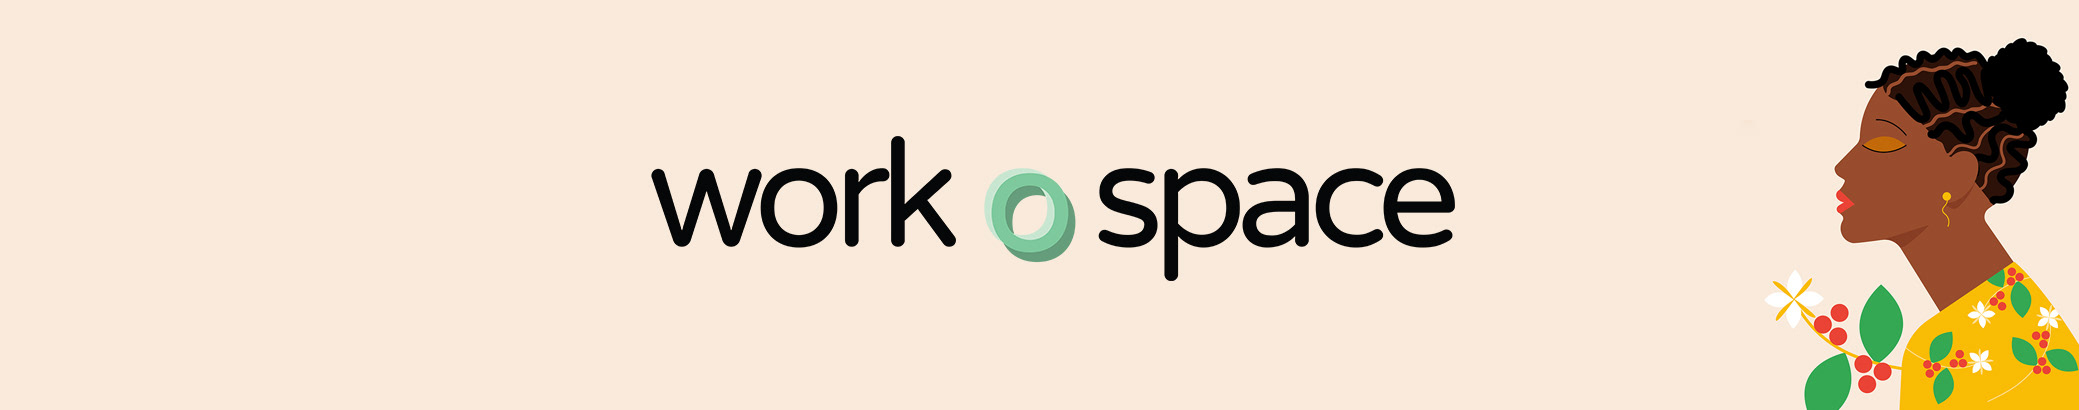 Workospace Indias profilbanner